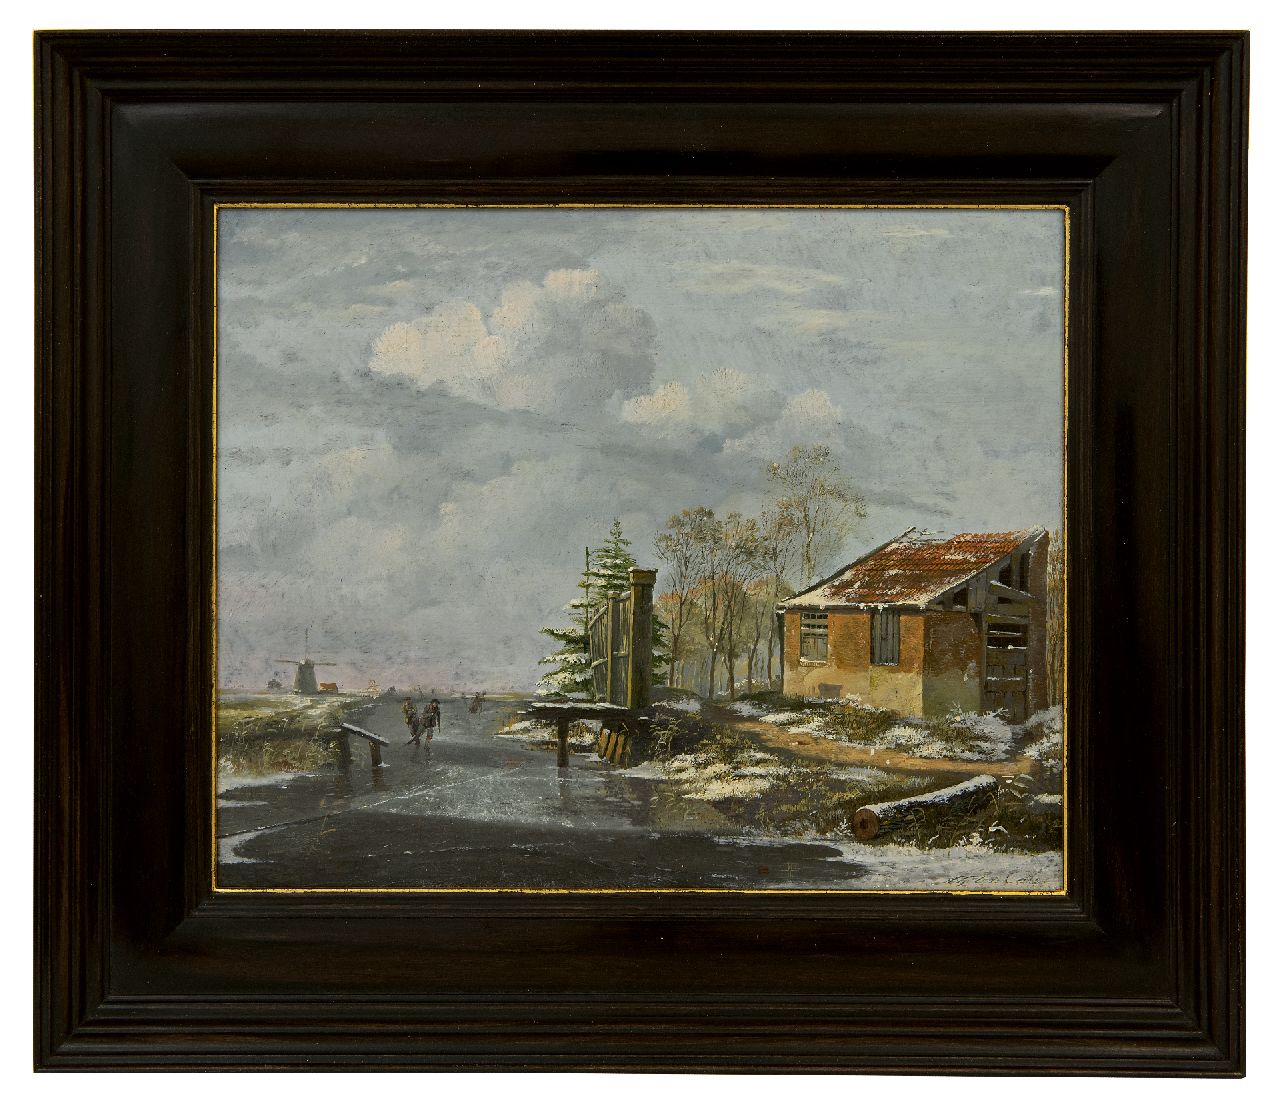 Cate H.G. ten | Hendrik Gerrit ten Cate | Schilderijen te koop aangeboden | Schaatsers in een besneeuwd winterlandschap, olieverf op paneel 25,8 x 31,9 cm, gesigneerd rechtsonder